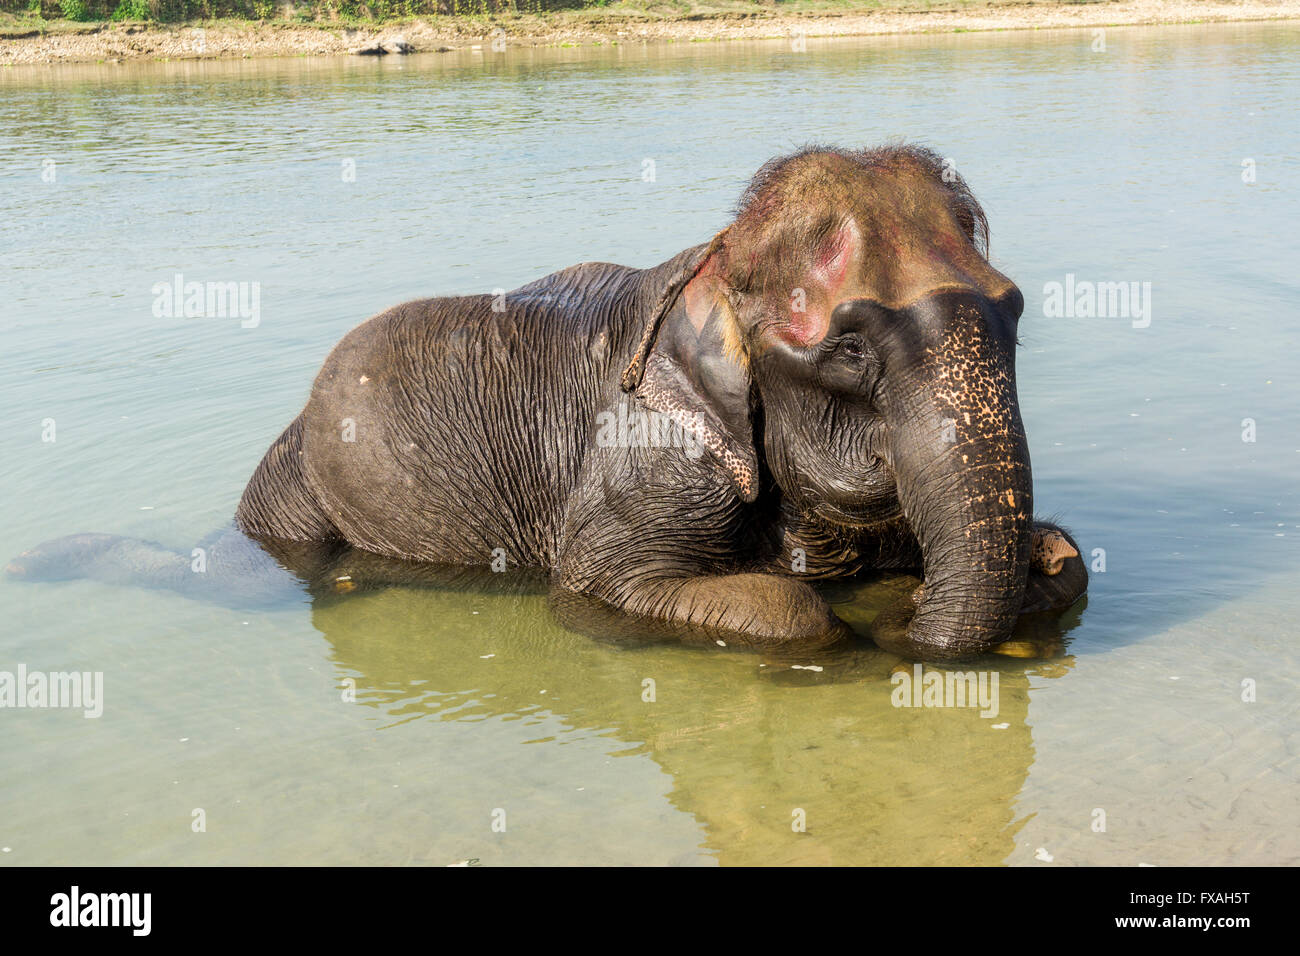 Addomesticazione giovane elefante Asiatico (Elephas maximus) la balneazione nel fiume poco profondo, Sauraha, Chitwan, Nepal Foto Stock